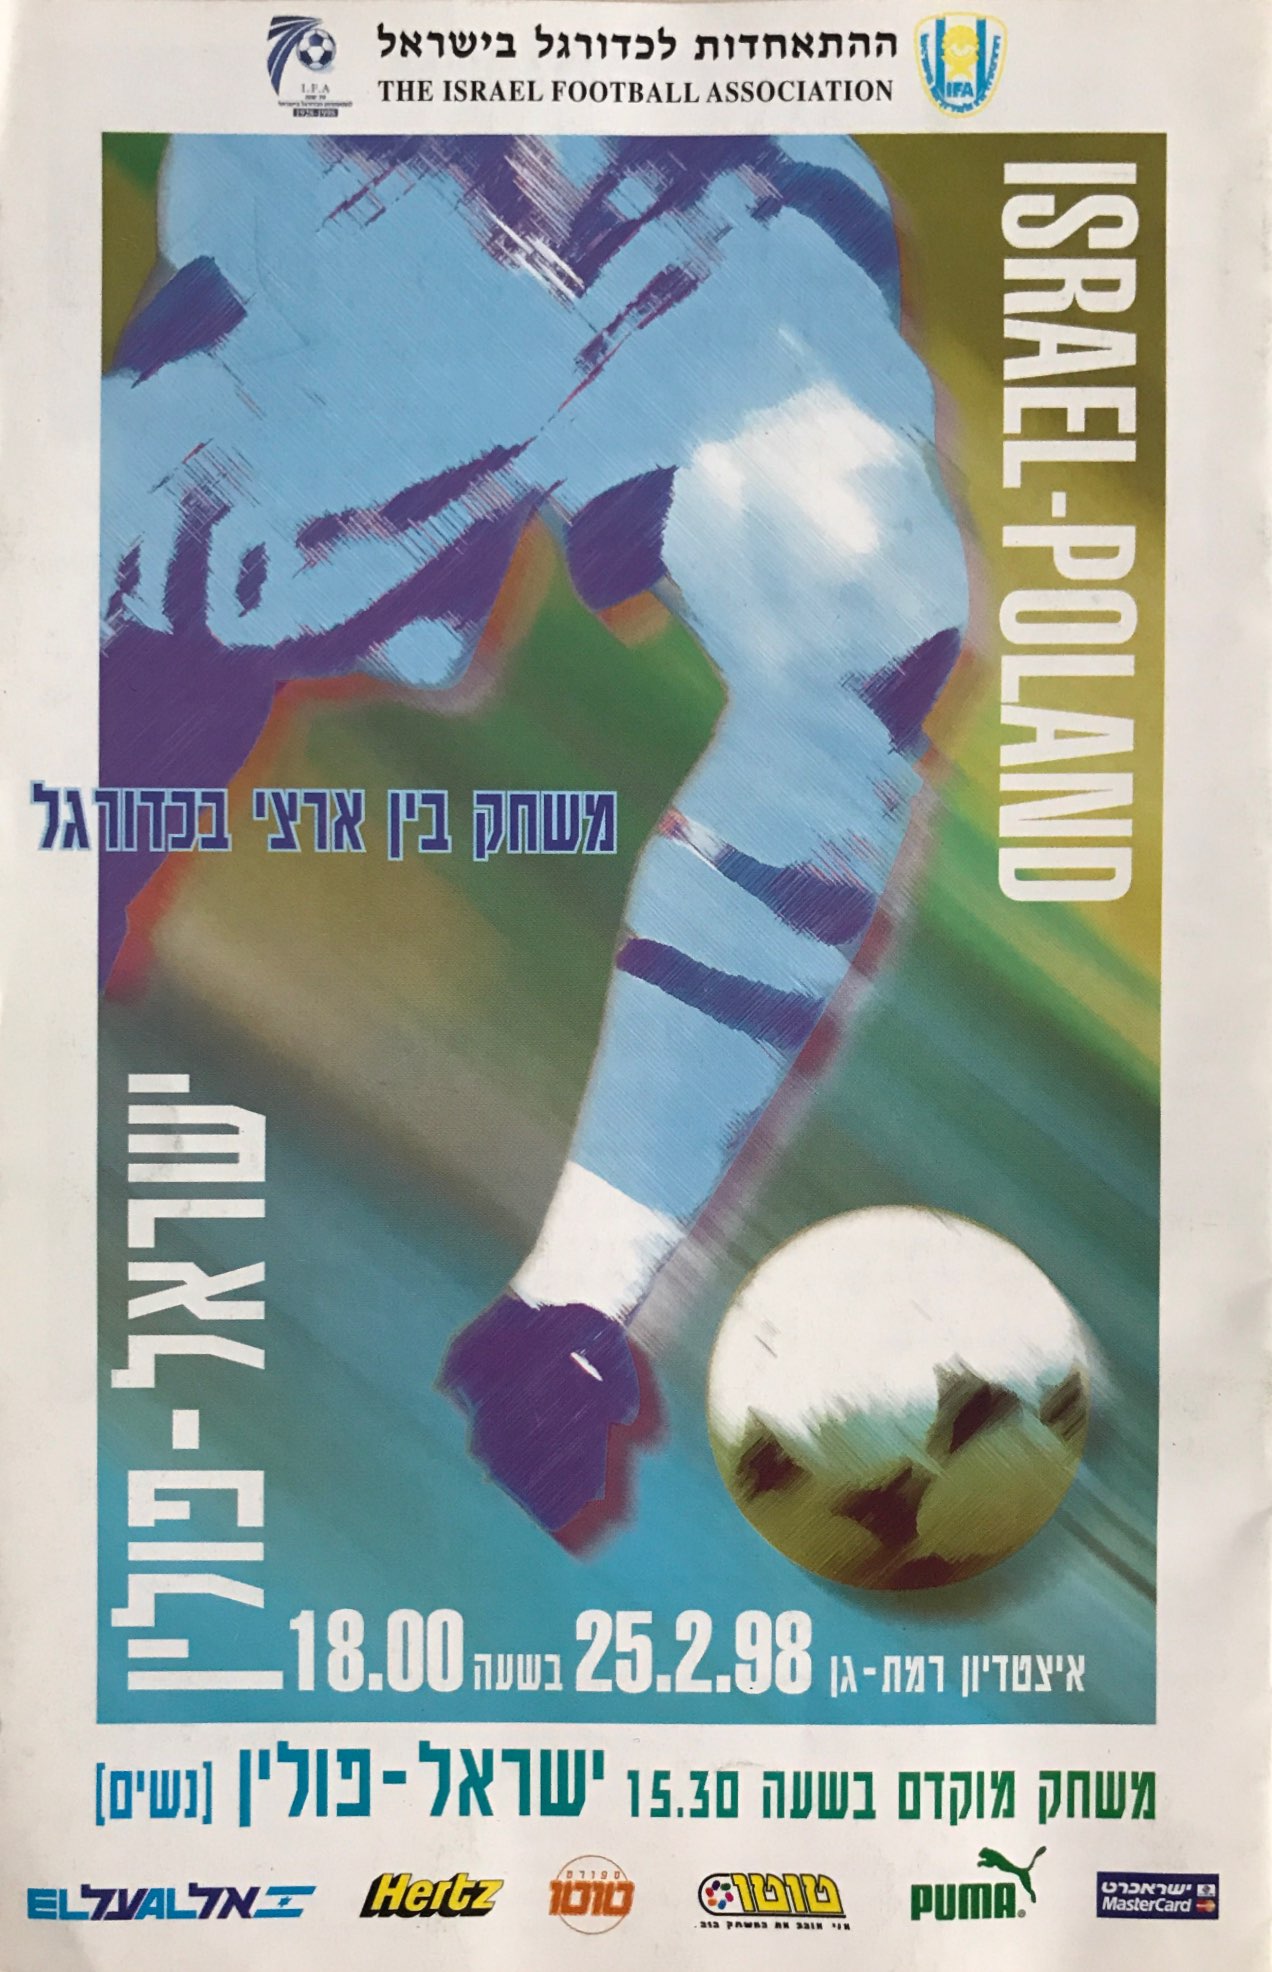 Program meczowy Izrael - Polska 2:0 (25.02.1998)